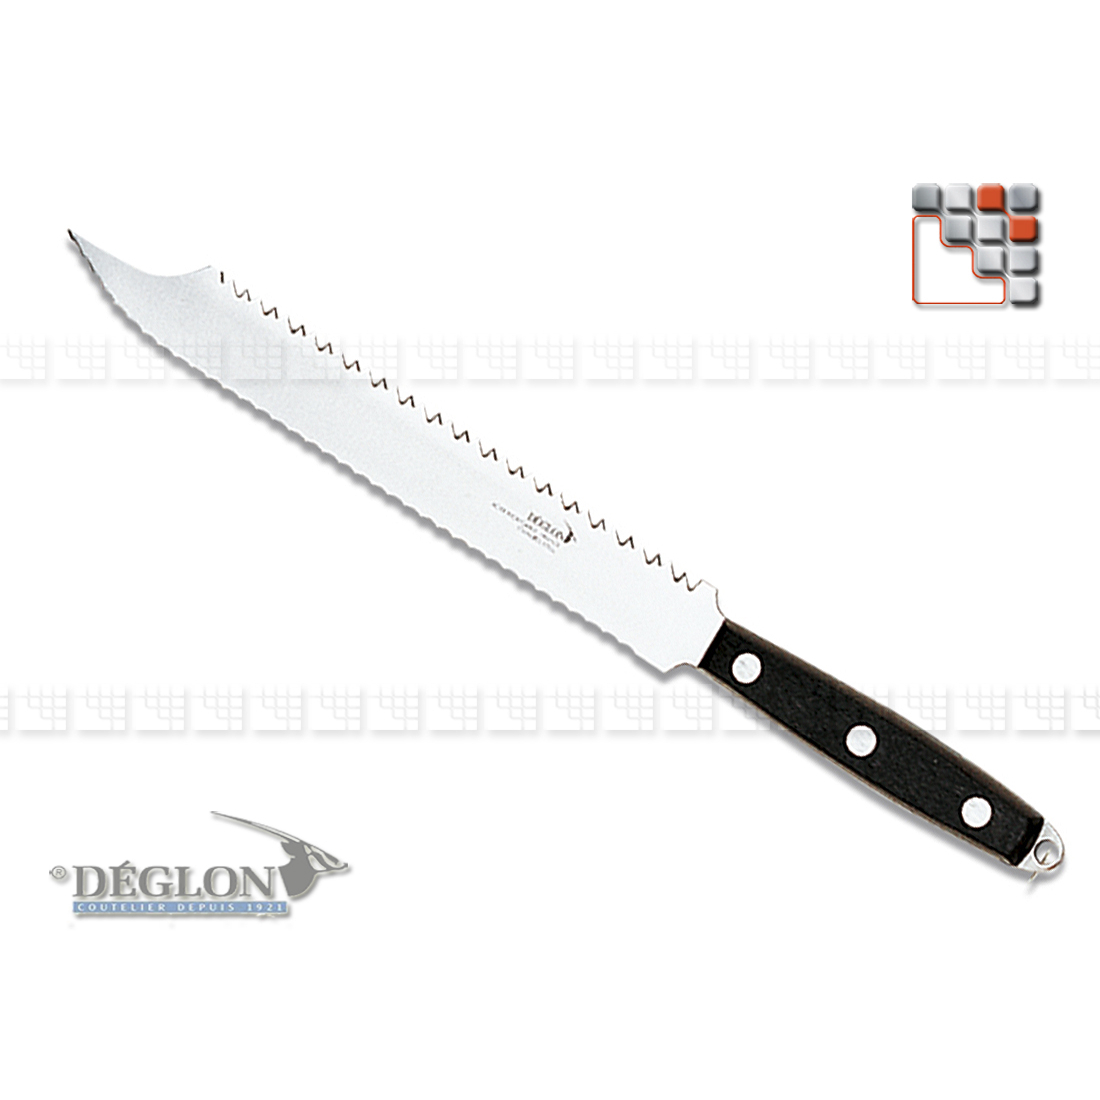 Freezing Knife 23 Swedish AU DWARF A38-1620803 DEGLON® Knives & Cutting